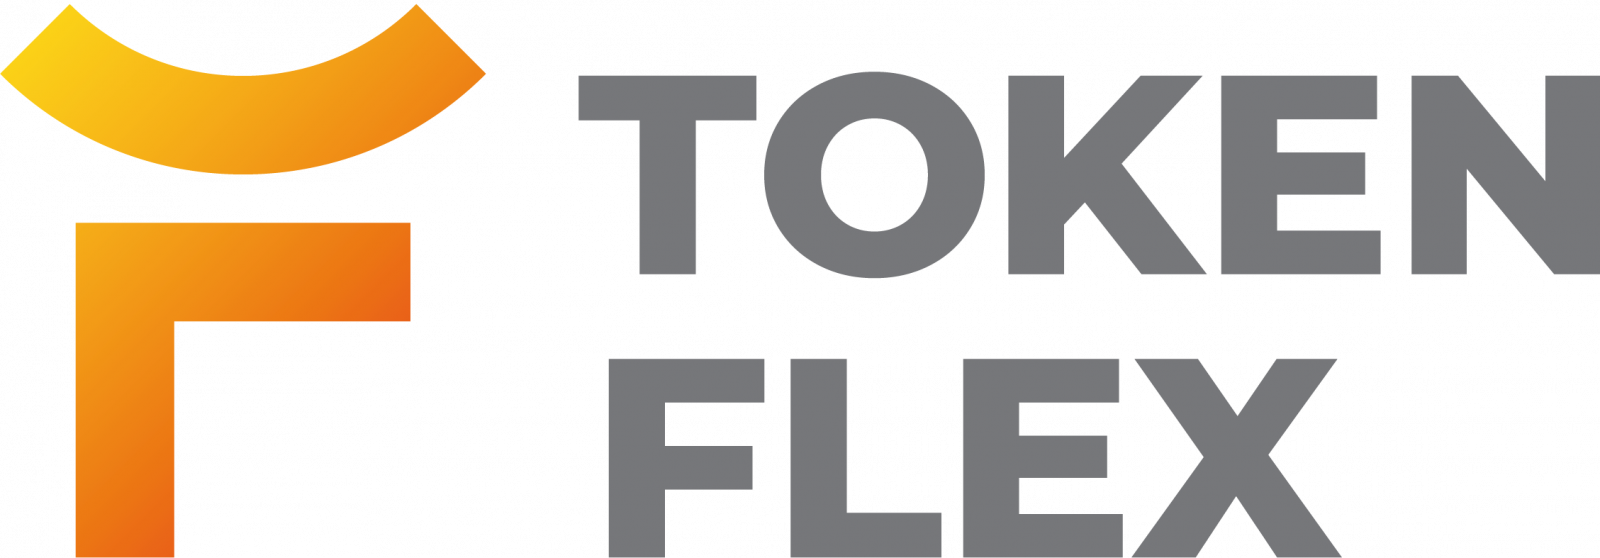 Flex логотип. Token логотип. Флекс токен. Флекс вольт логотип.